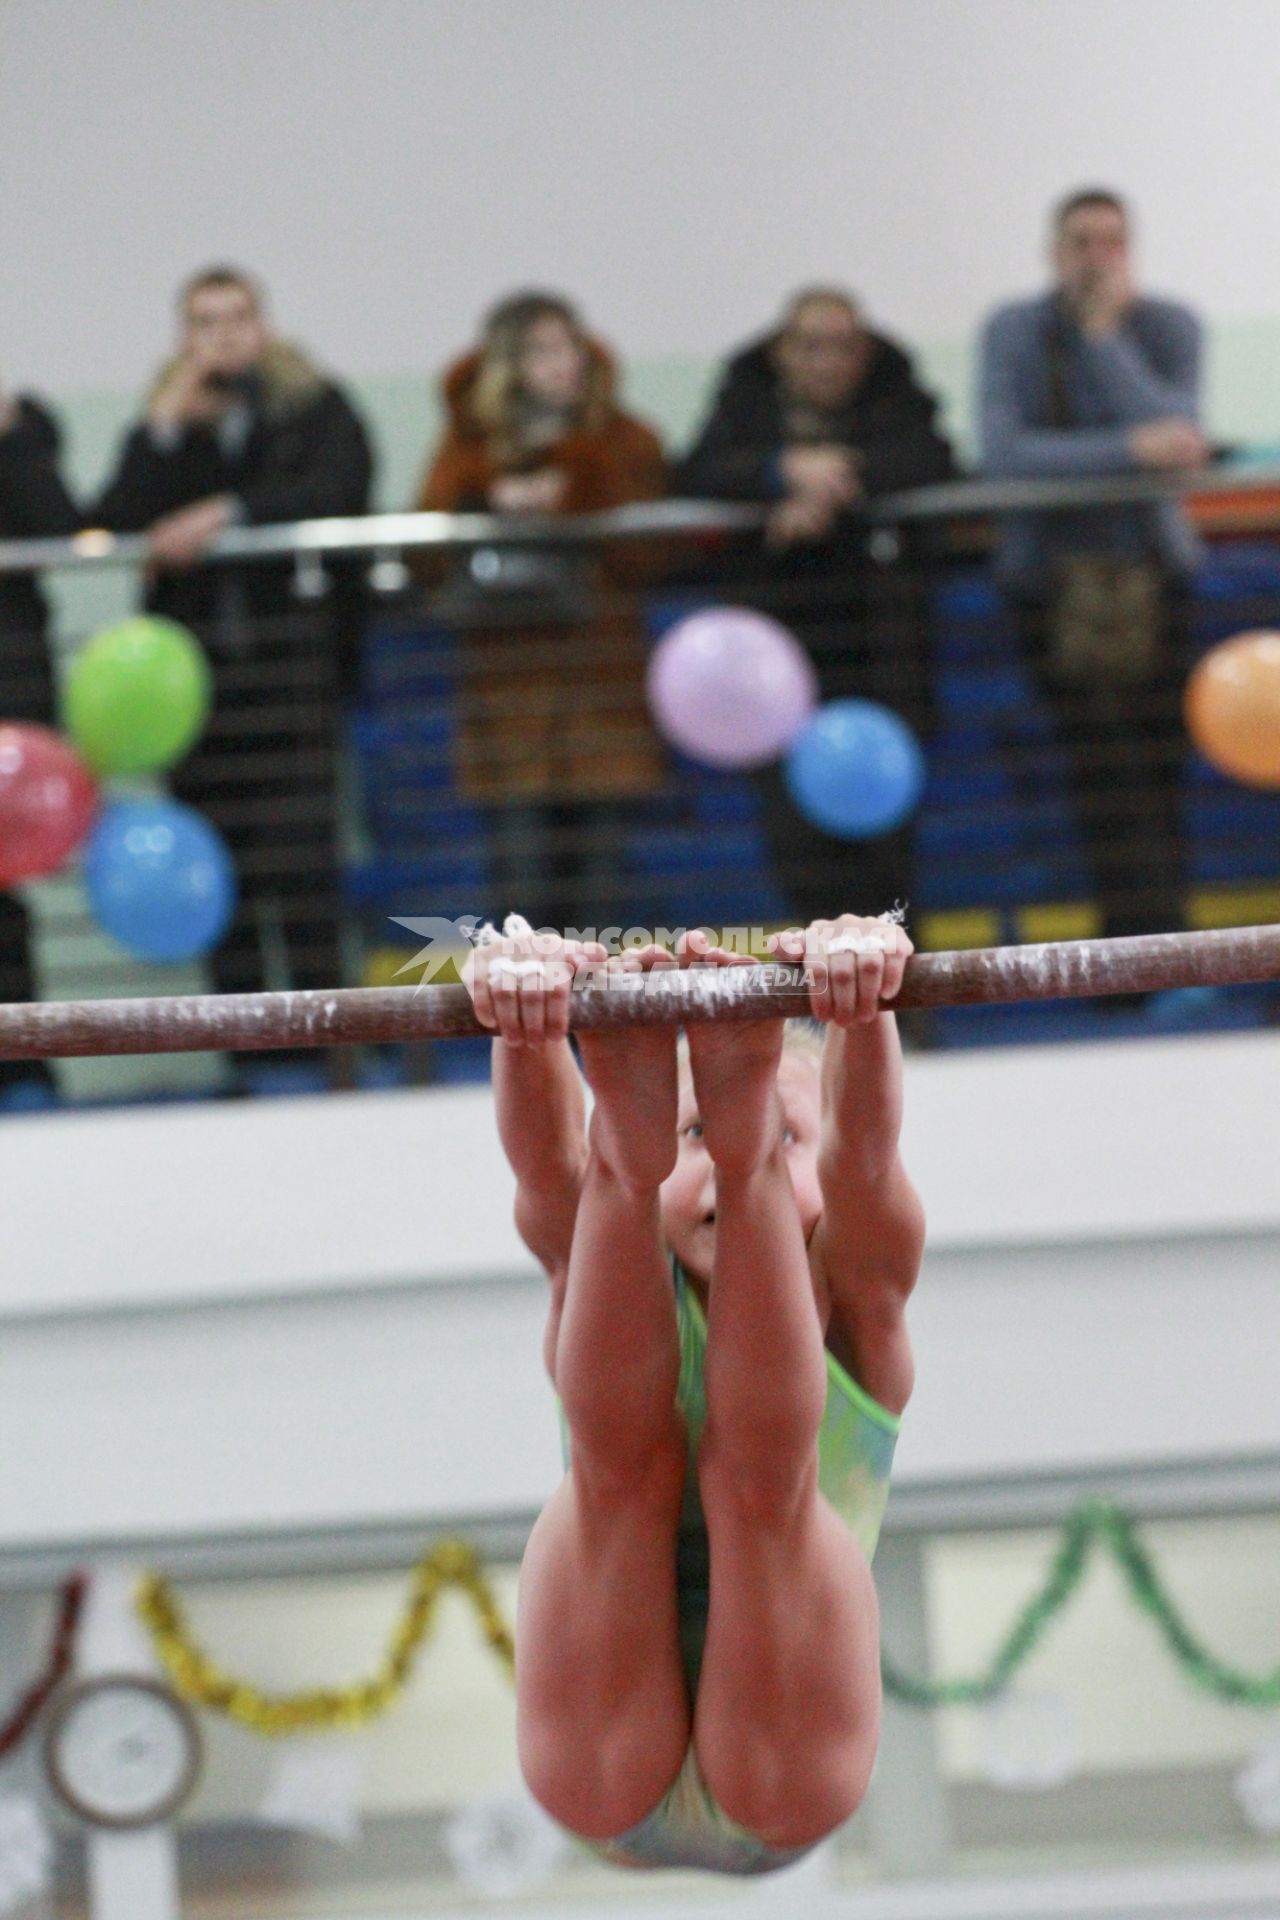 Турнир по спортивной гимнастике на призы Сергея Хорохордина. Девочка выполняет упражнения на перекладине.